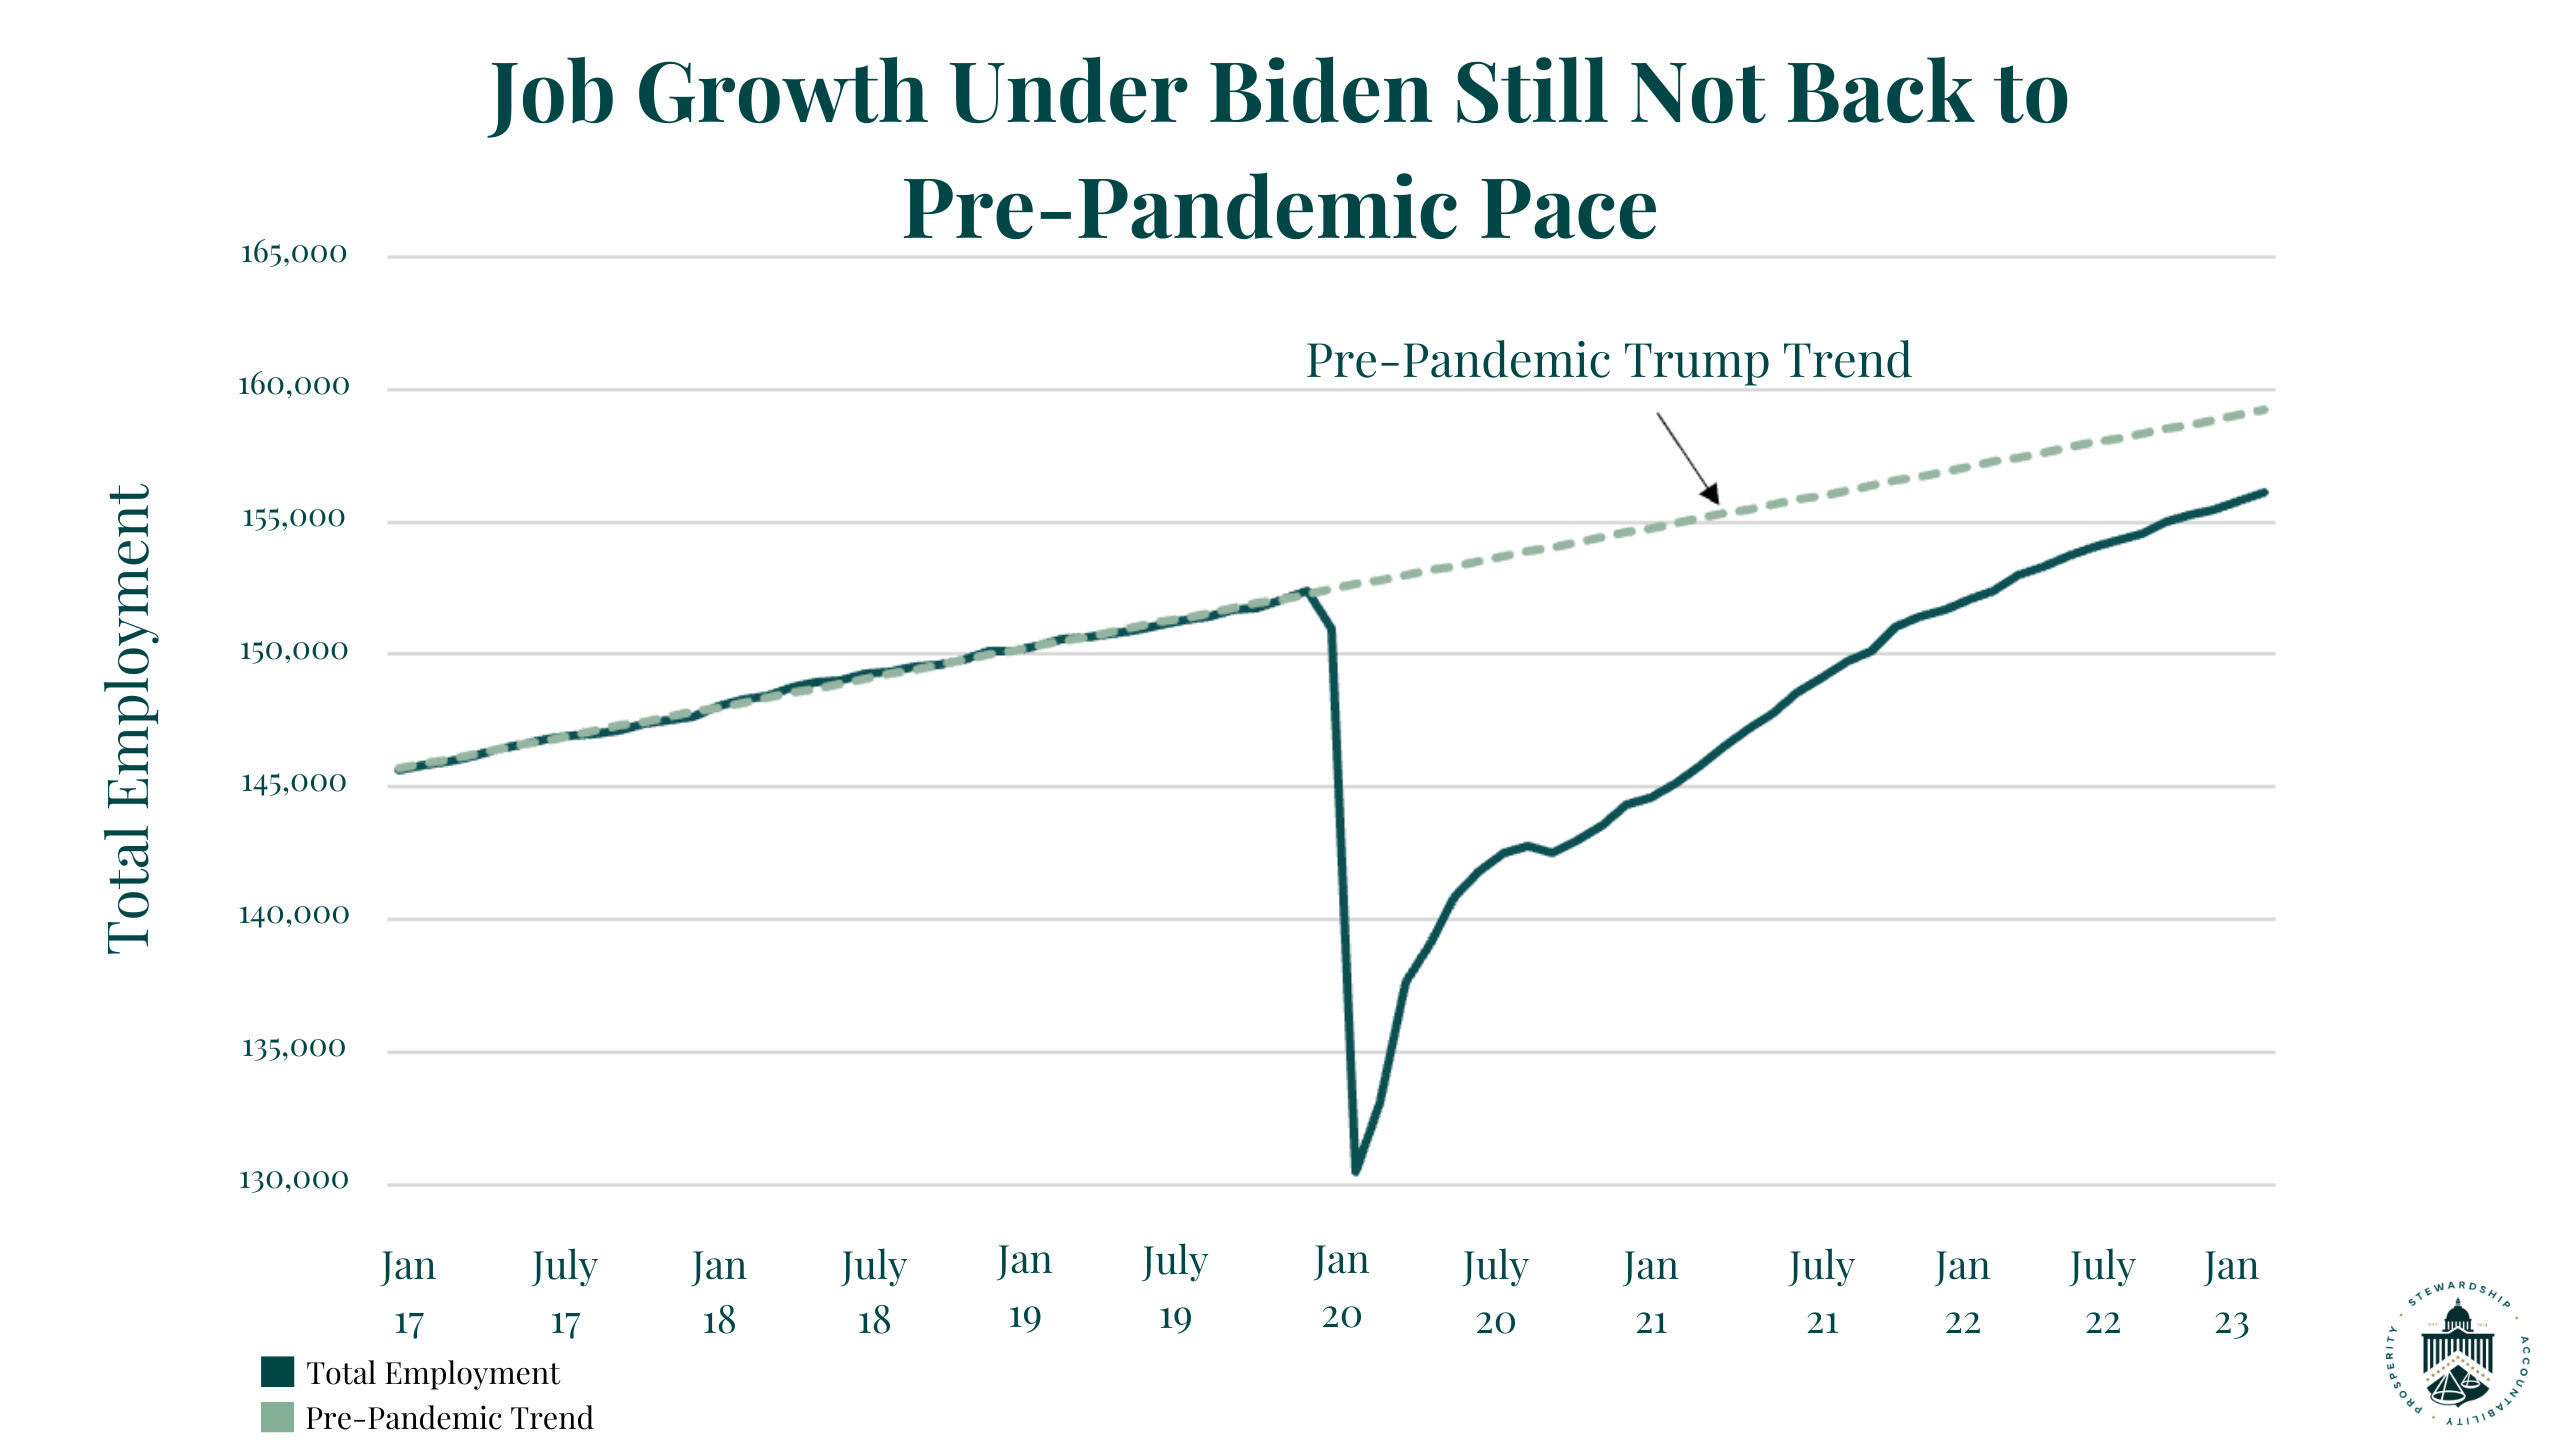 Biden vs Trump job creation trend line